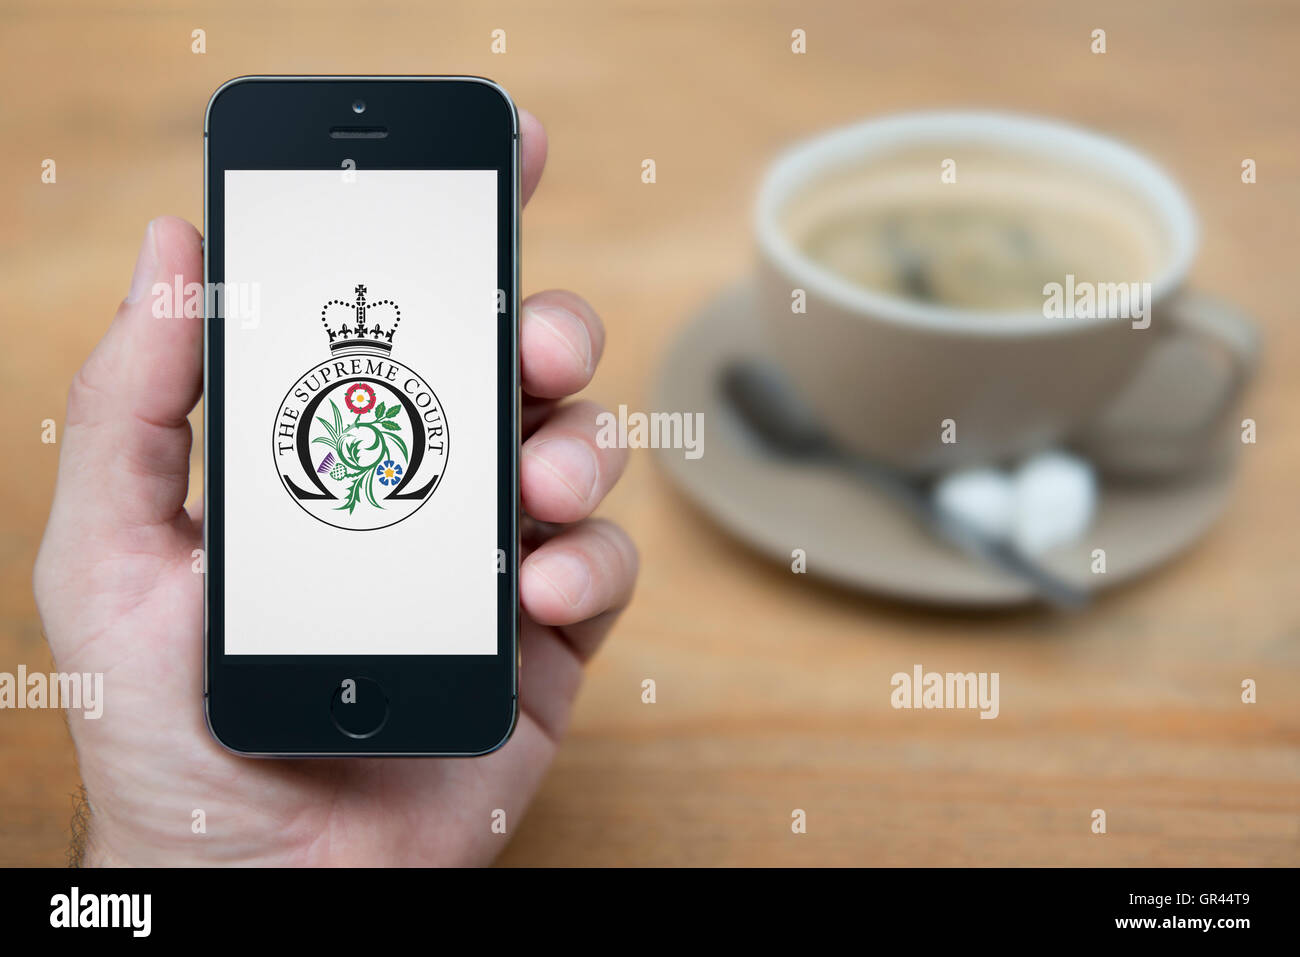 Un homme se penche sur son iPhone qui affiche le gouvernement britannique Cour Suprême crest (usage éditorial uniquement). Banque D'Images